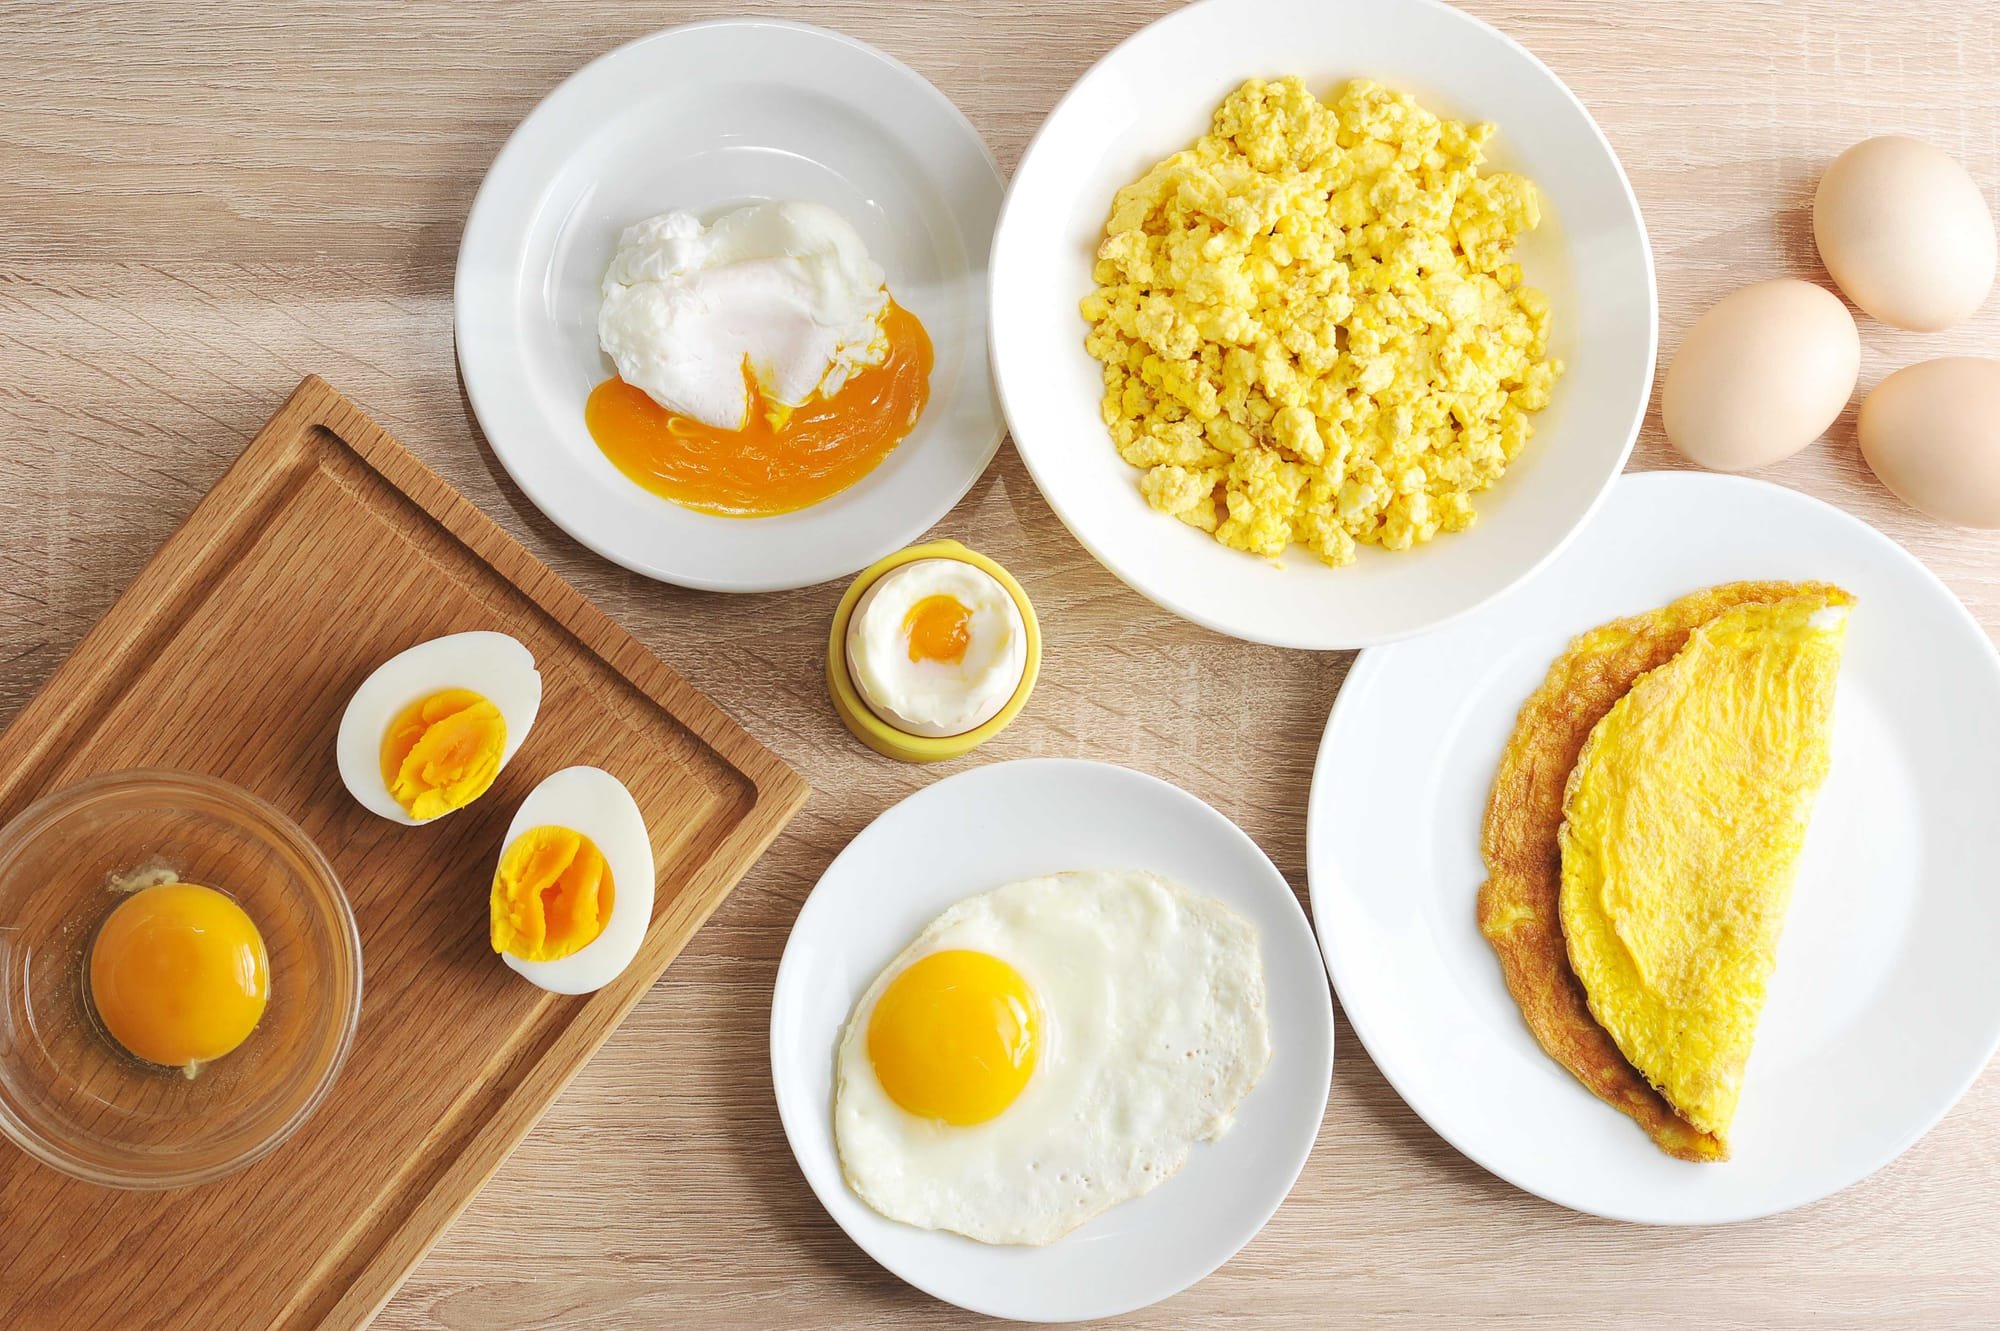 دراسة تزعم مدى ضرر تناول نصف بيضة فقط في اليوم!